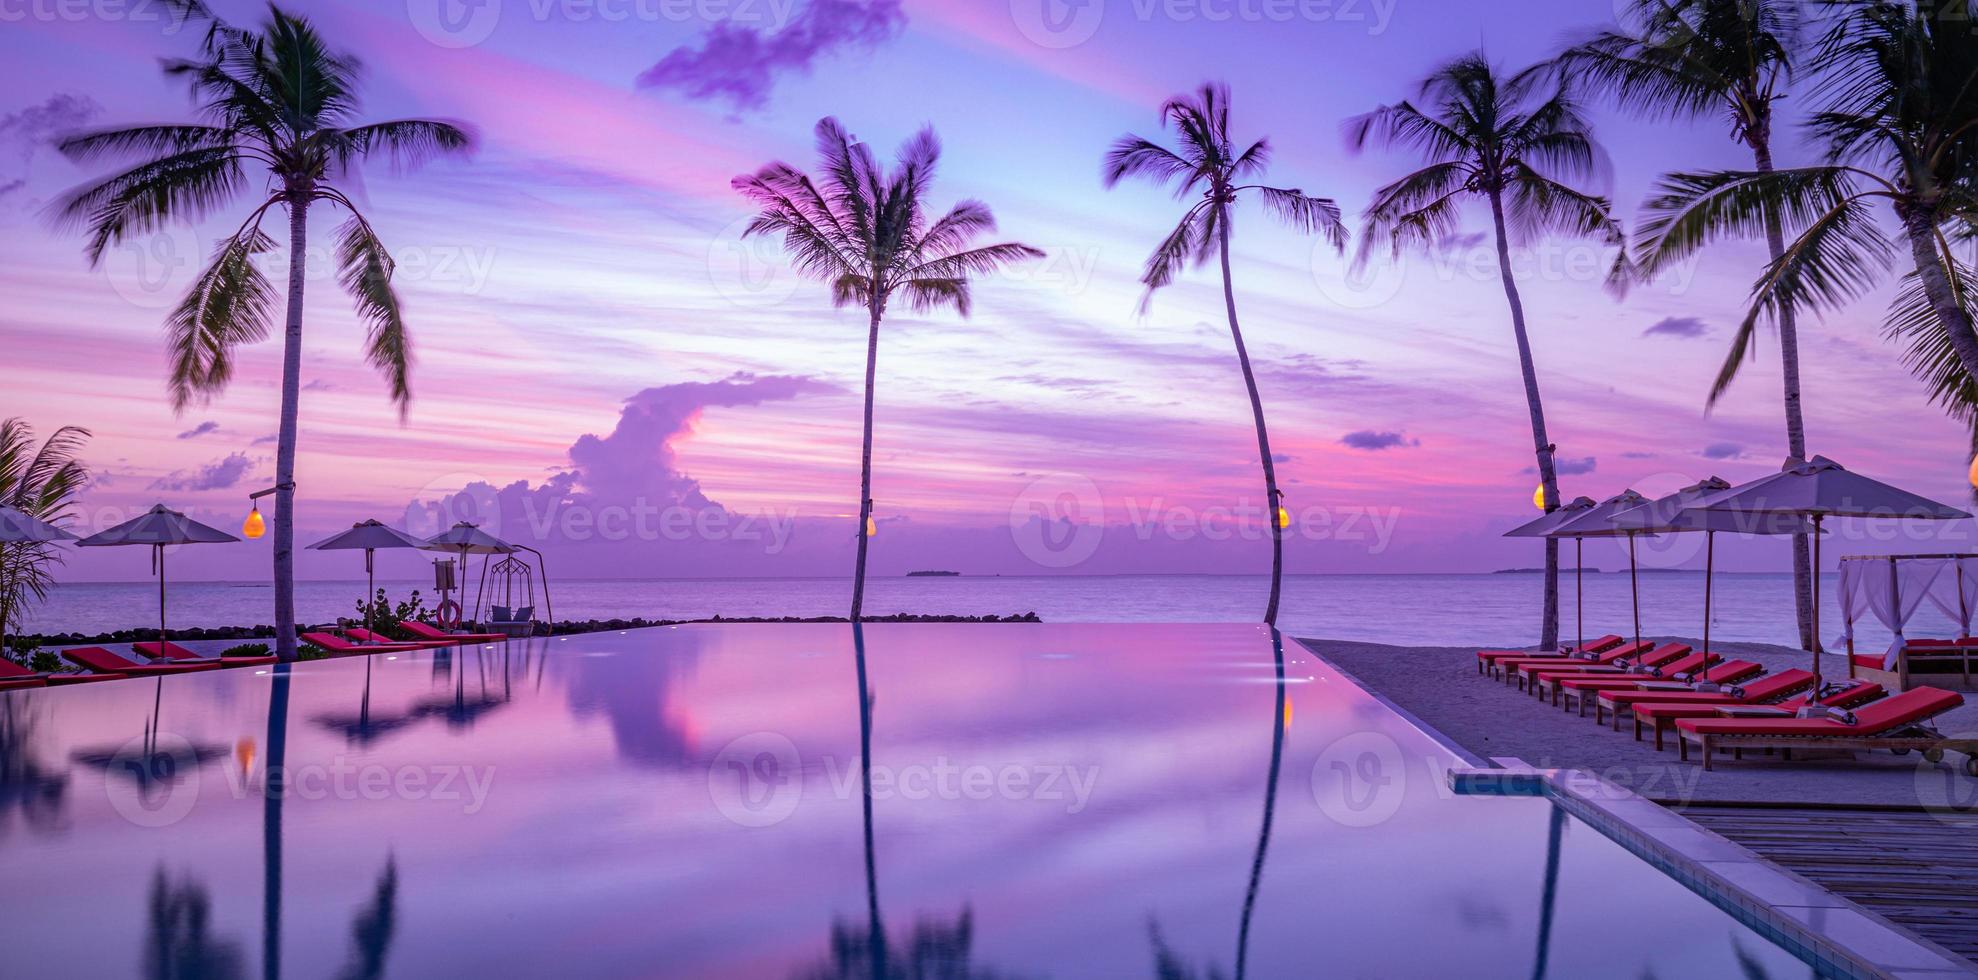 piscina infinita al aire libre de ensueño de fantasía con un fantástico cielo de nubes al atardecer. panorama de vacaciones de verano de ocio. viajes paisajes palmeras sombrillas agua reflejo. colorida playa de islas paraíso foto